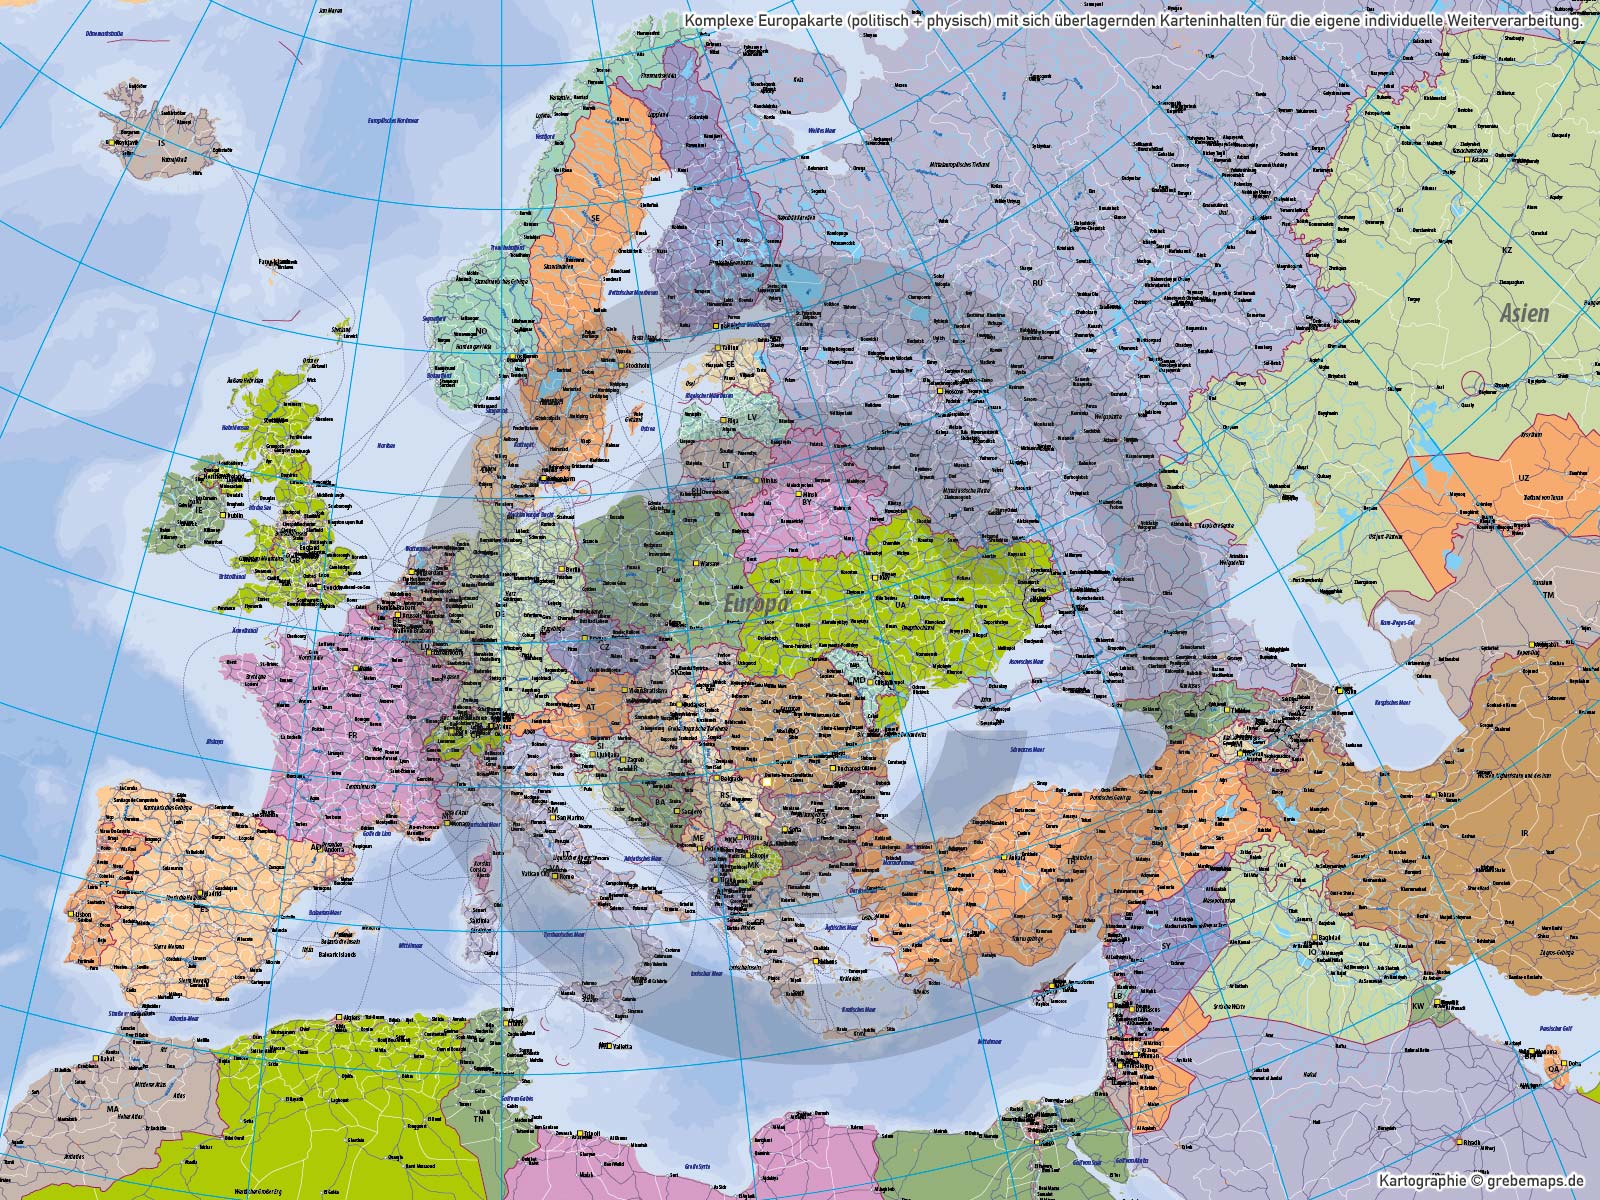 Europa Vektorkarte politisch physisch mit Provinzen flächentreu Landkarte, Landkarte Europa, physische Landkarte Europa, vector map europe, Landkarte Europa physisch Illustrator, Vektorgrafik, Vektorkarte Europa AI Illustrator, editierbar, download, ebenen-separiert, Europakarte editierbar